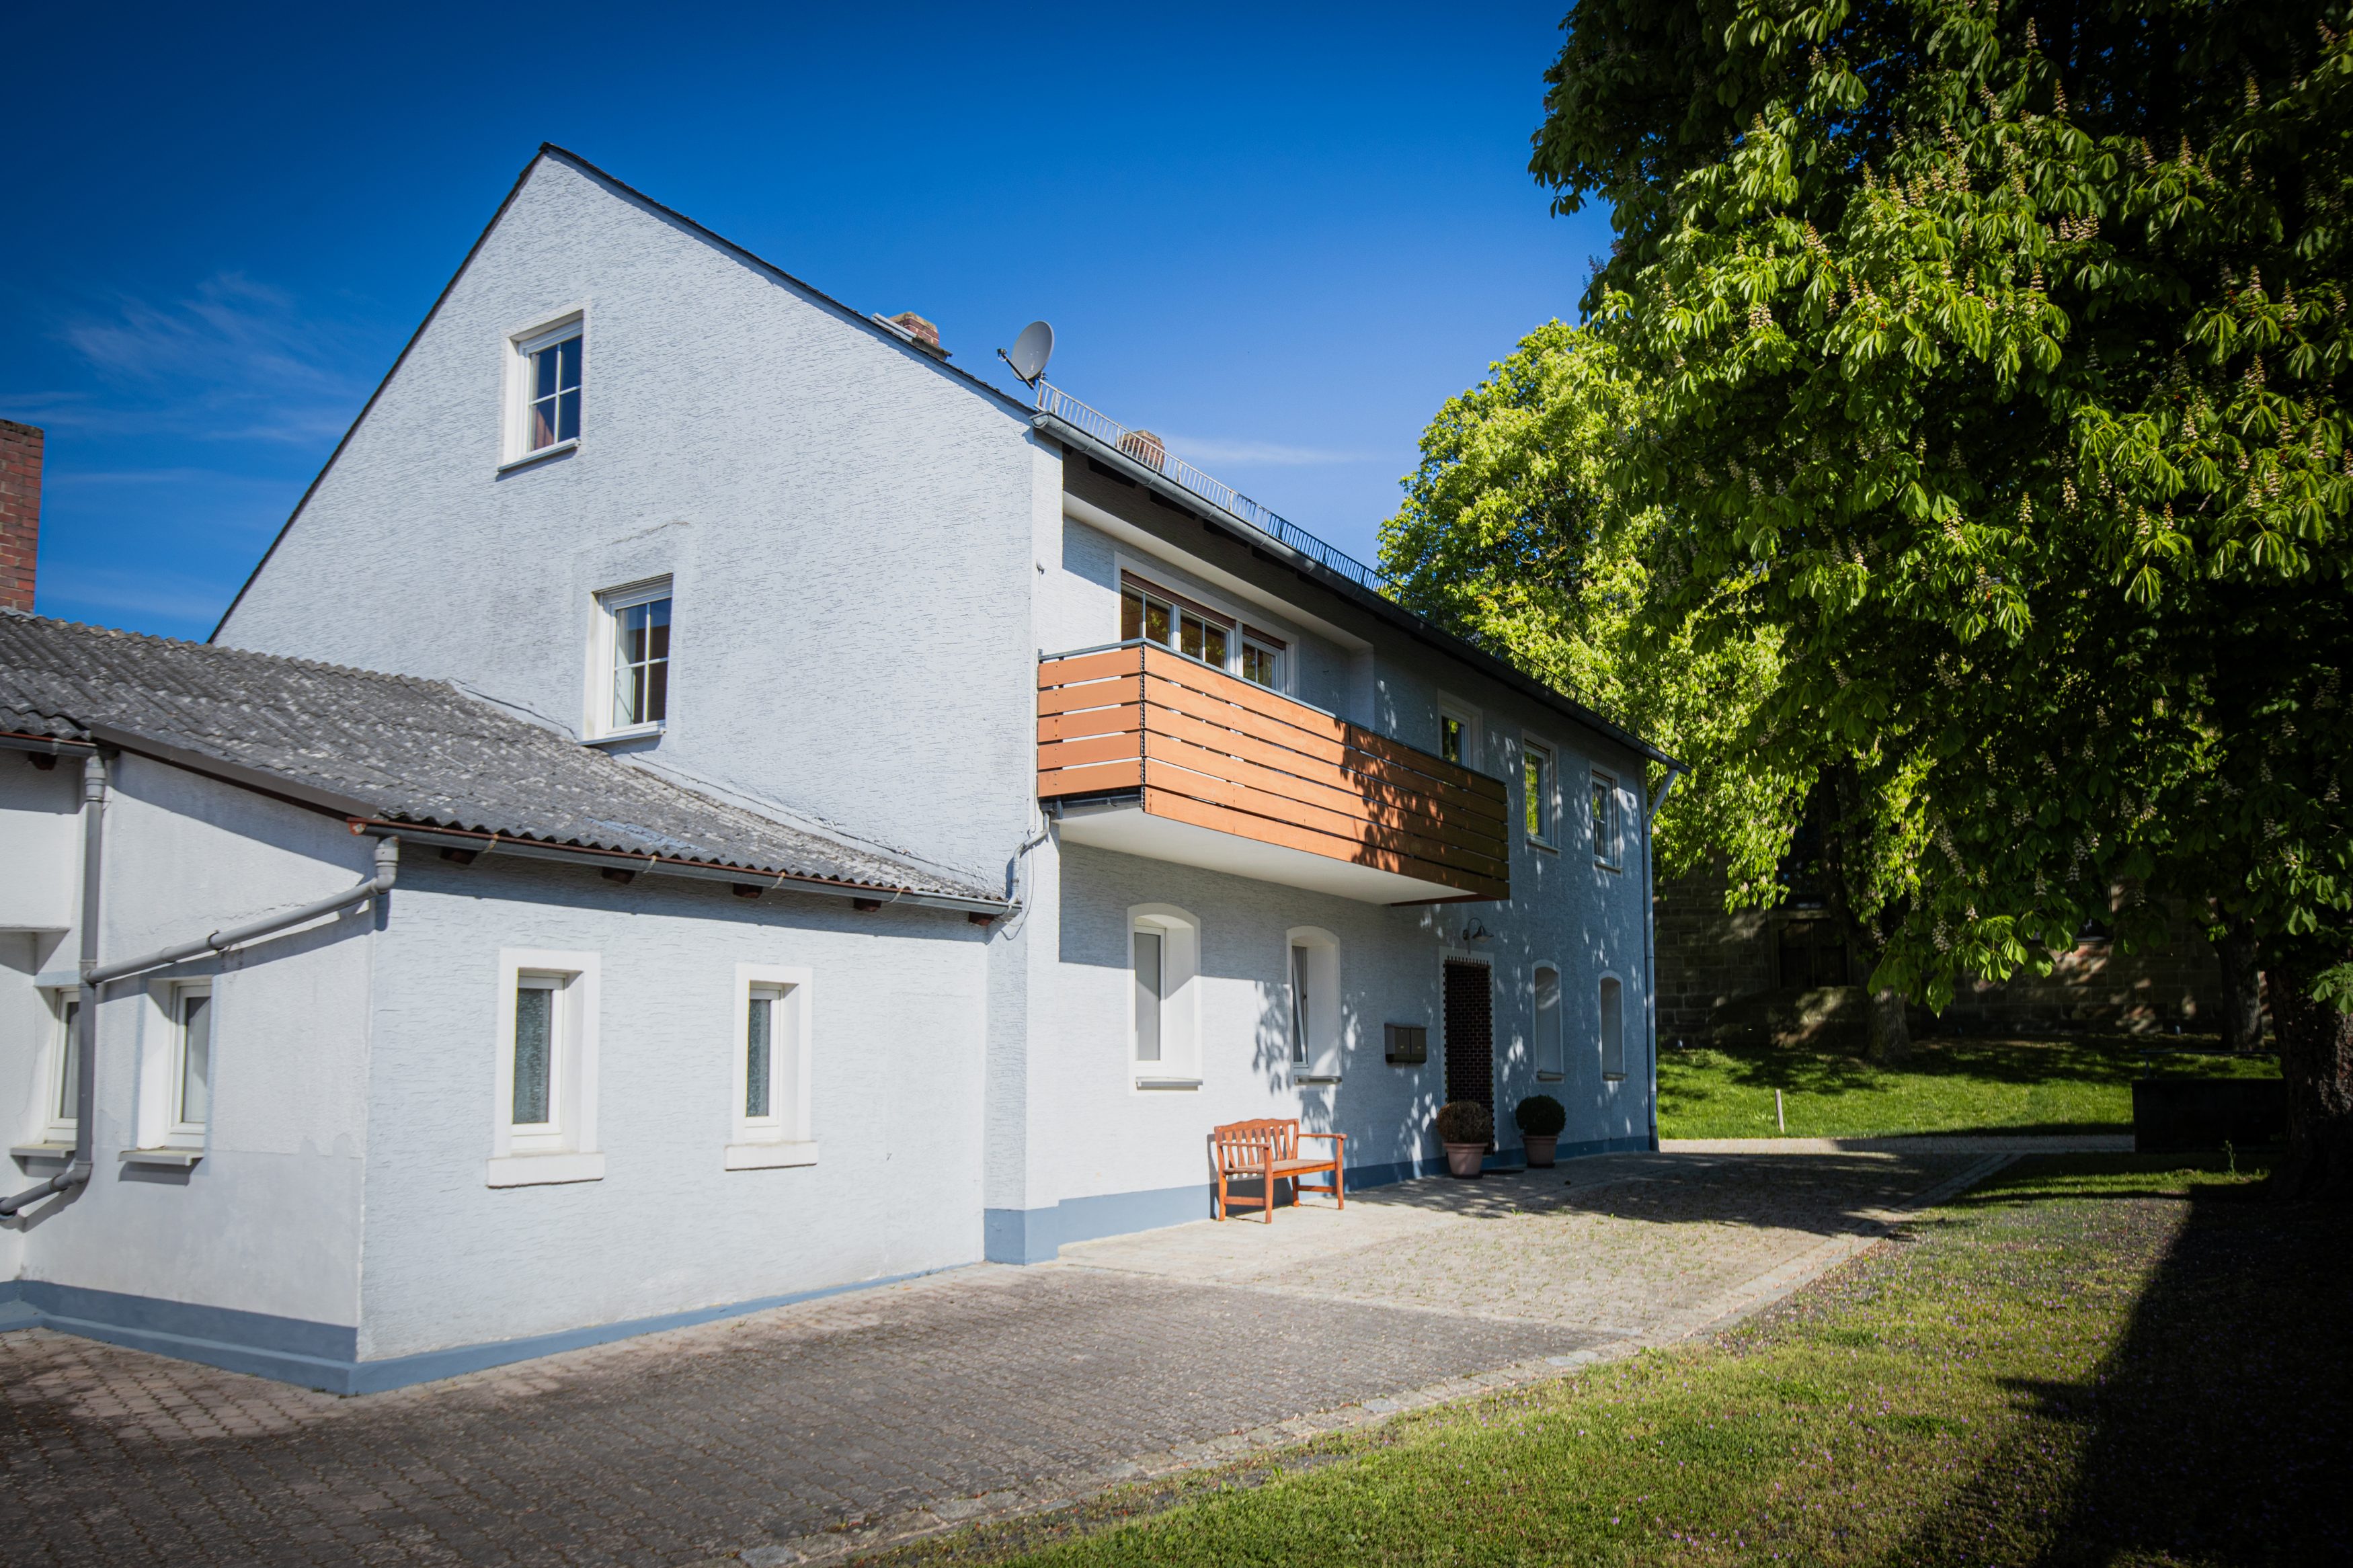 Immobilienverkauf: Historisches Mehrfamilienhaus mit Ausbaupotenzial in Speichersdorf